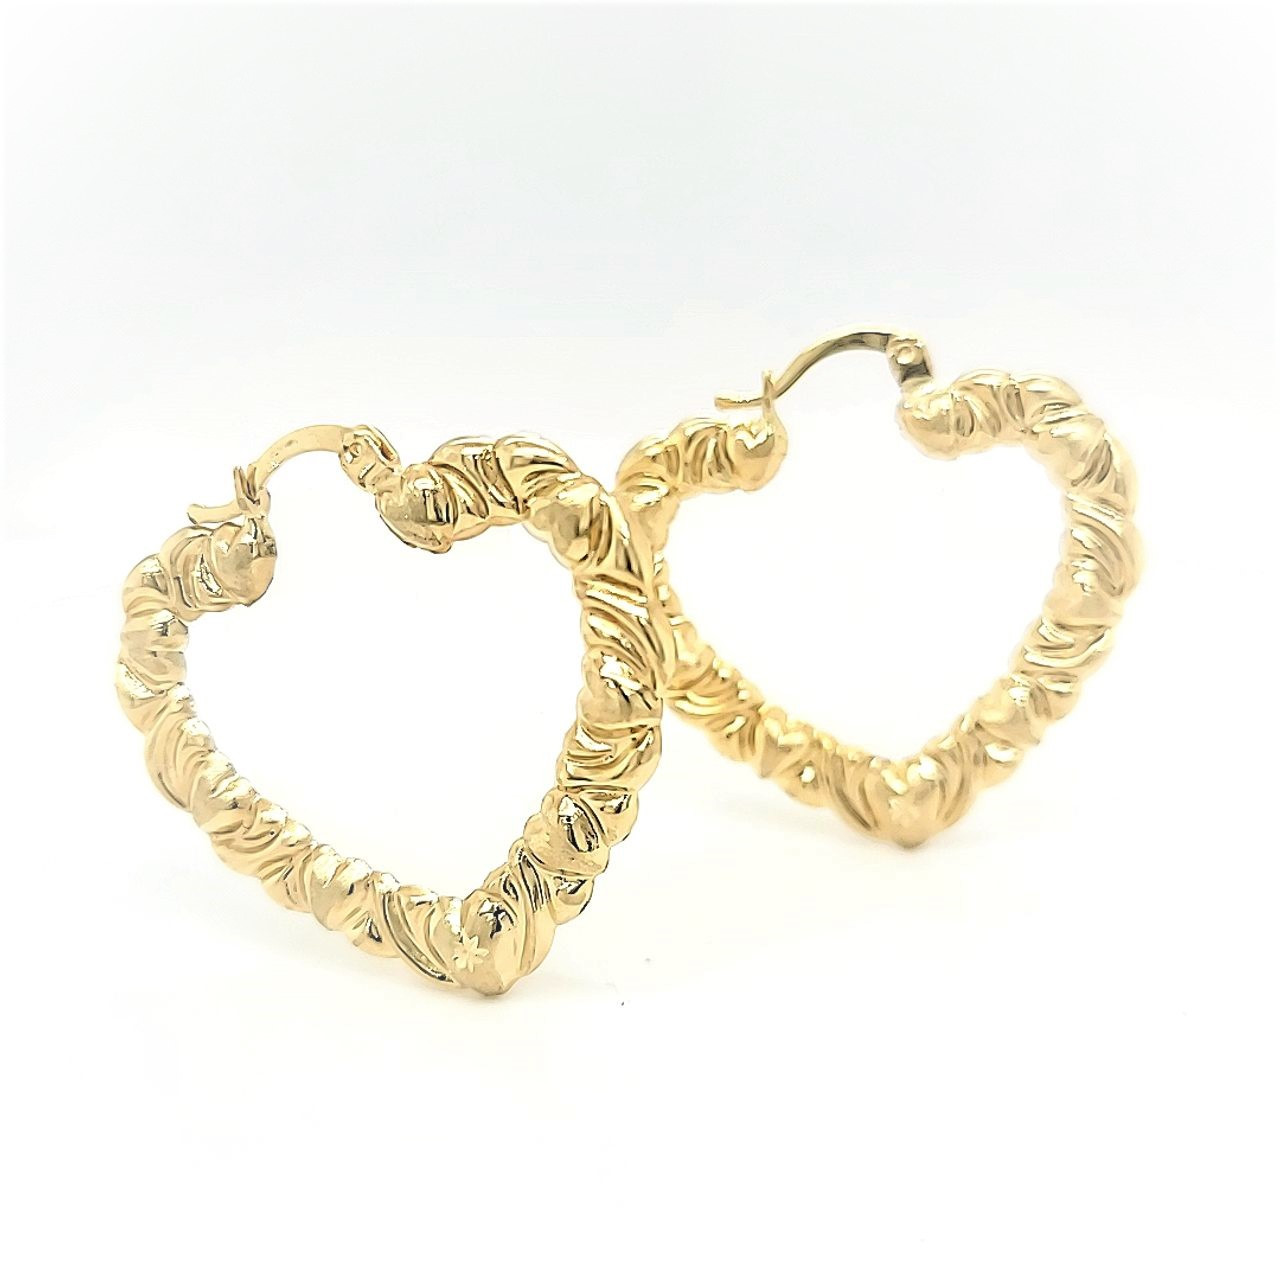 Yellow Gold Heart-Shaped Hoop Earrings